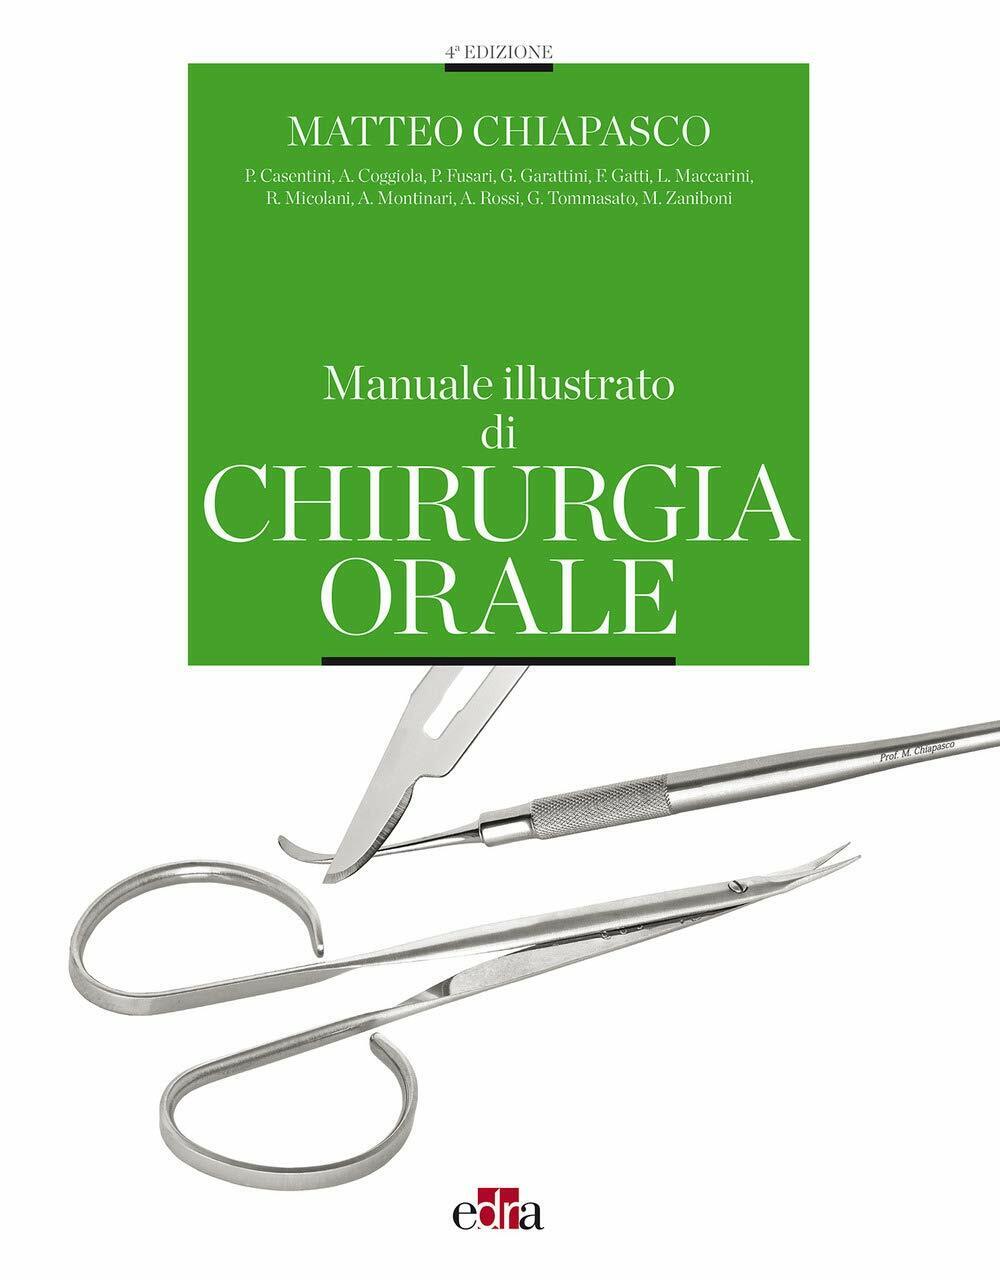 Manuale illustrato di chirurgia orale - Matteo Chiapasco - Edra, 2020